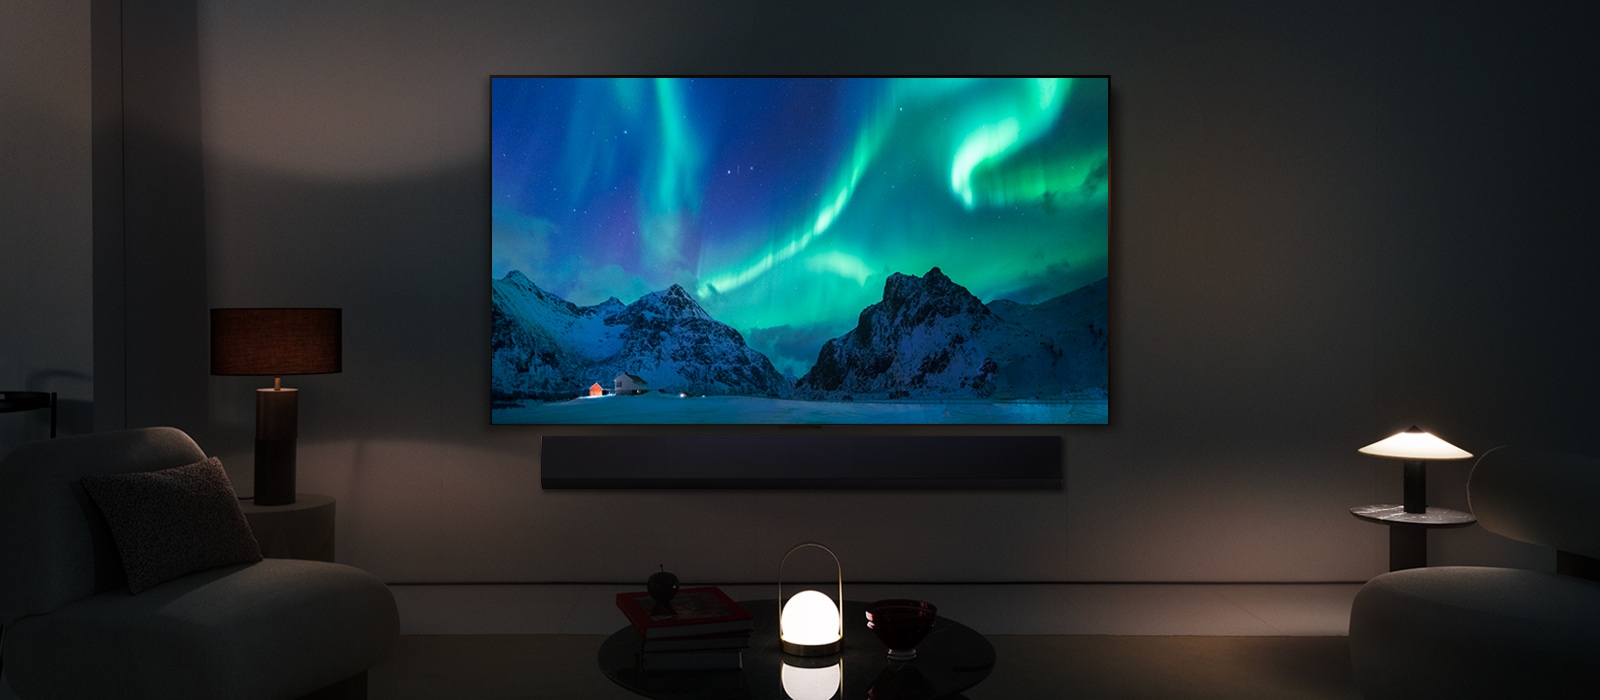 Téléviseur LG OLED TV et barre de son LG dans un espace habitable moderne dans la nuit. L'image de l'aurore boréale est affichée avec les niveaux de luminosité idéaux.